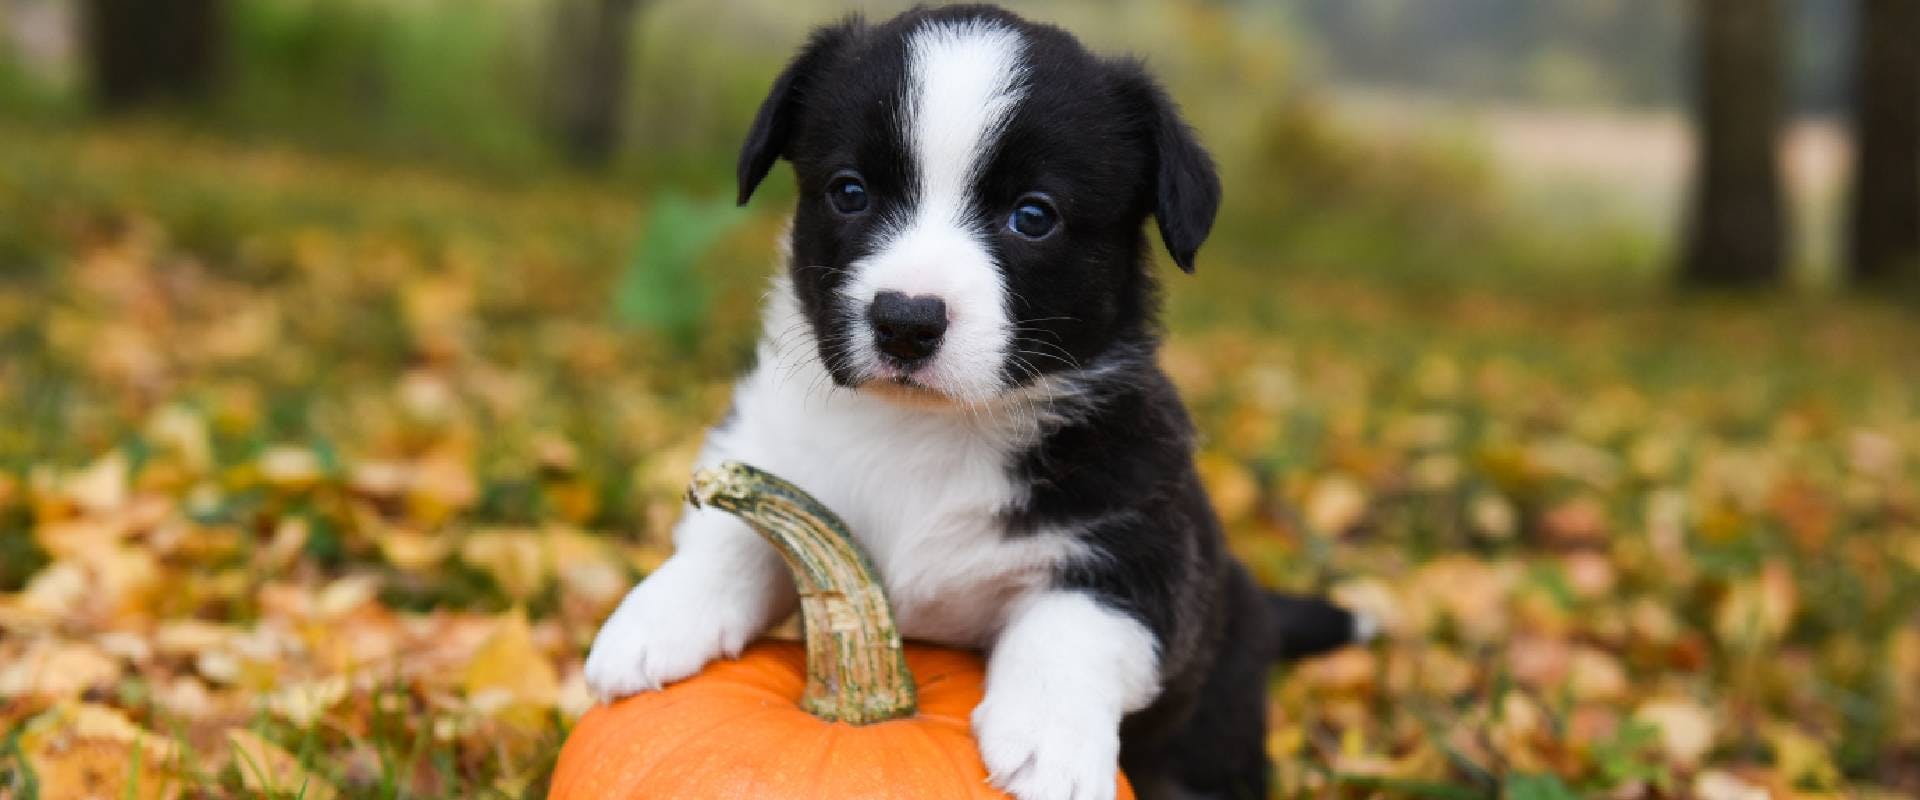 Puppy sitting on a pumpkin